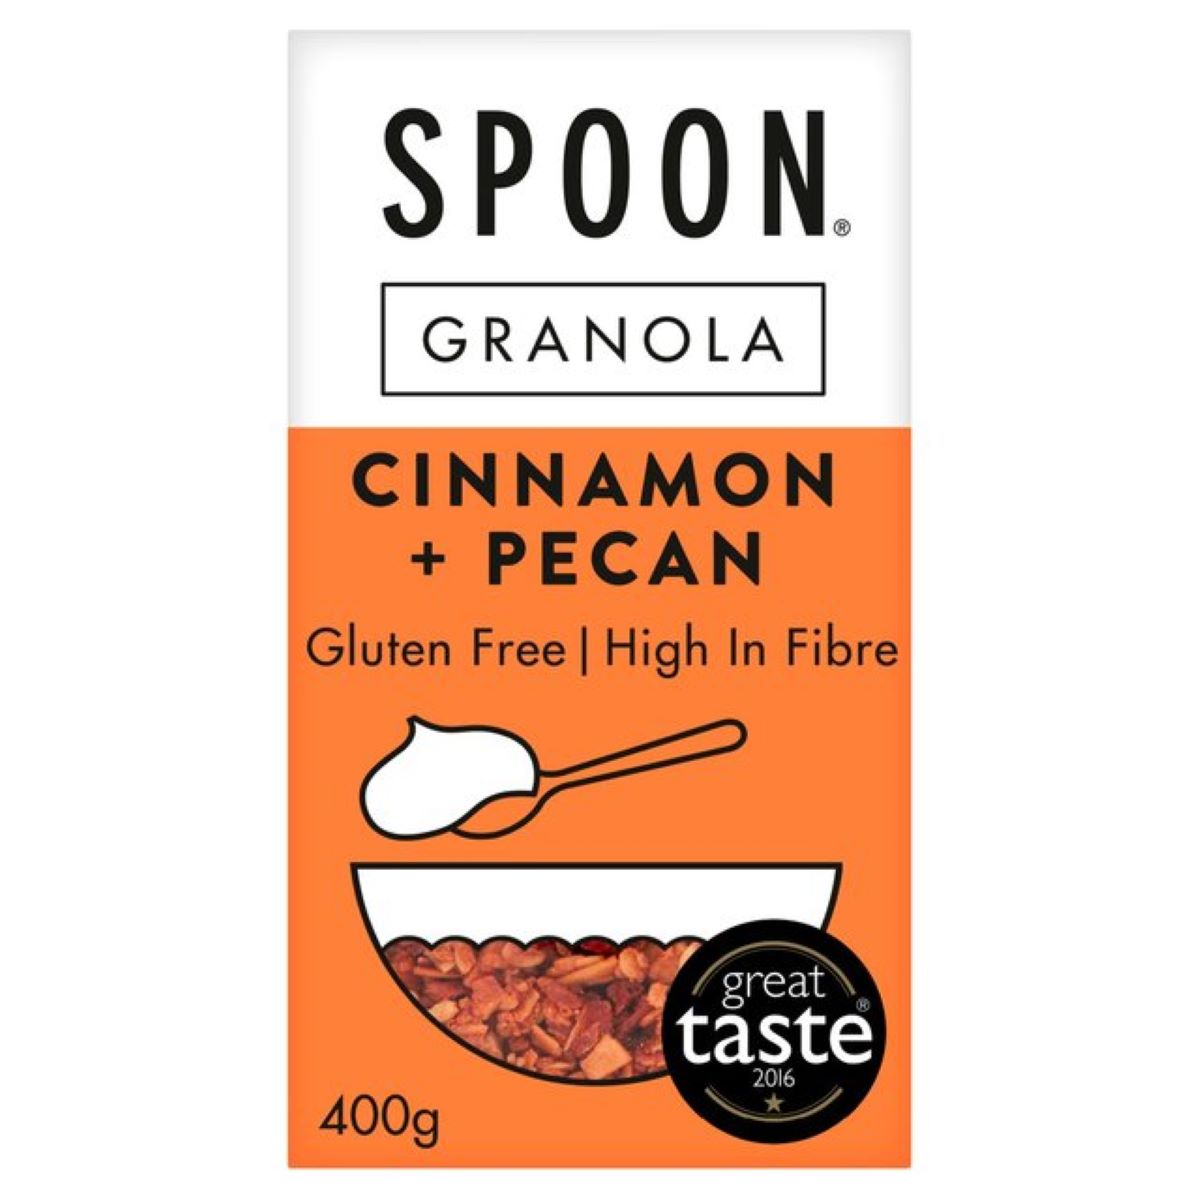 Spoon Cereals Cinnamon + Pecan Granola 400g